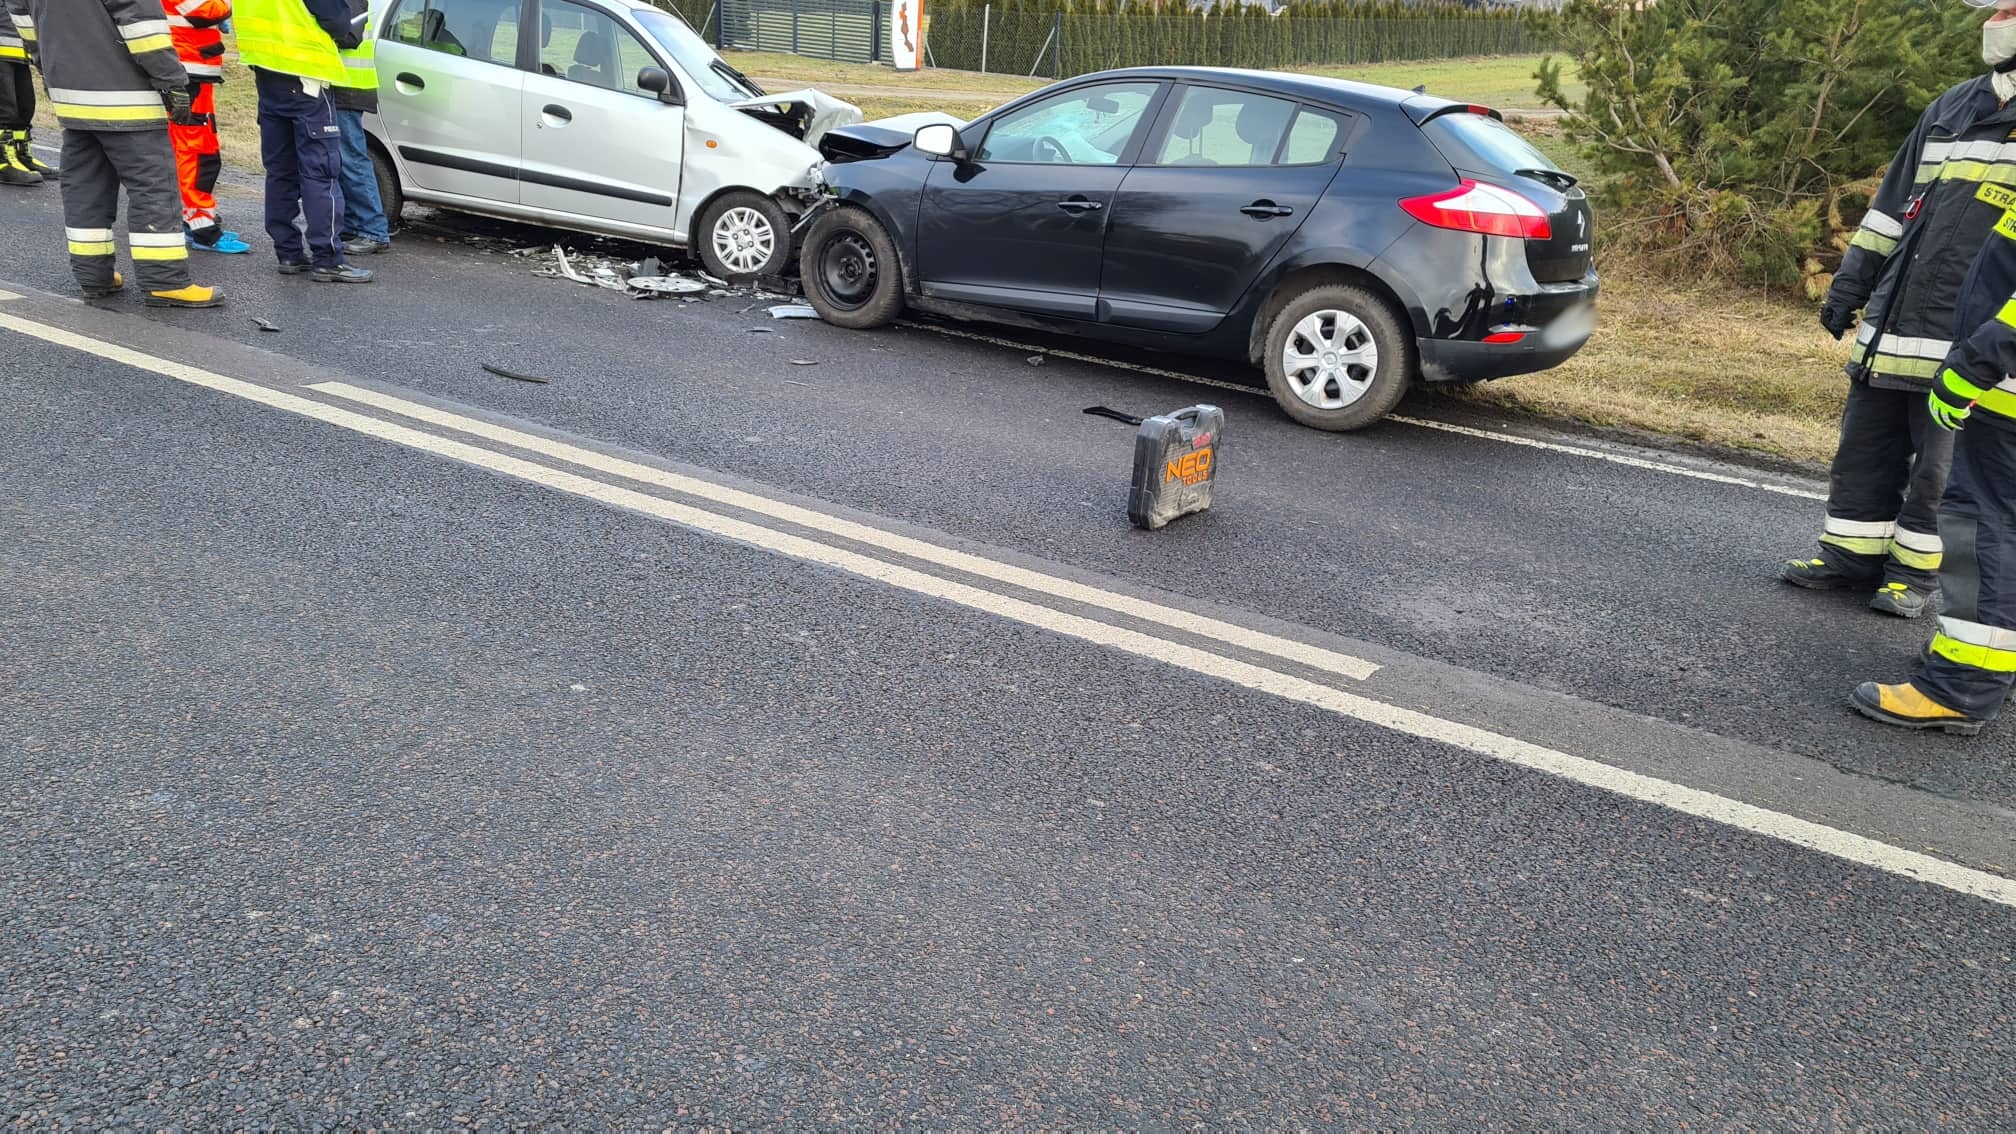 Wypadek na trasie Lublin – Łęczna. Dwie osoby poszkodowane (zdjęcia) AKTUALIZACJA